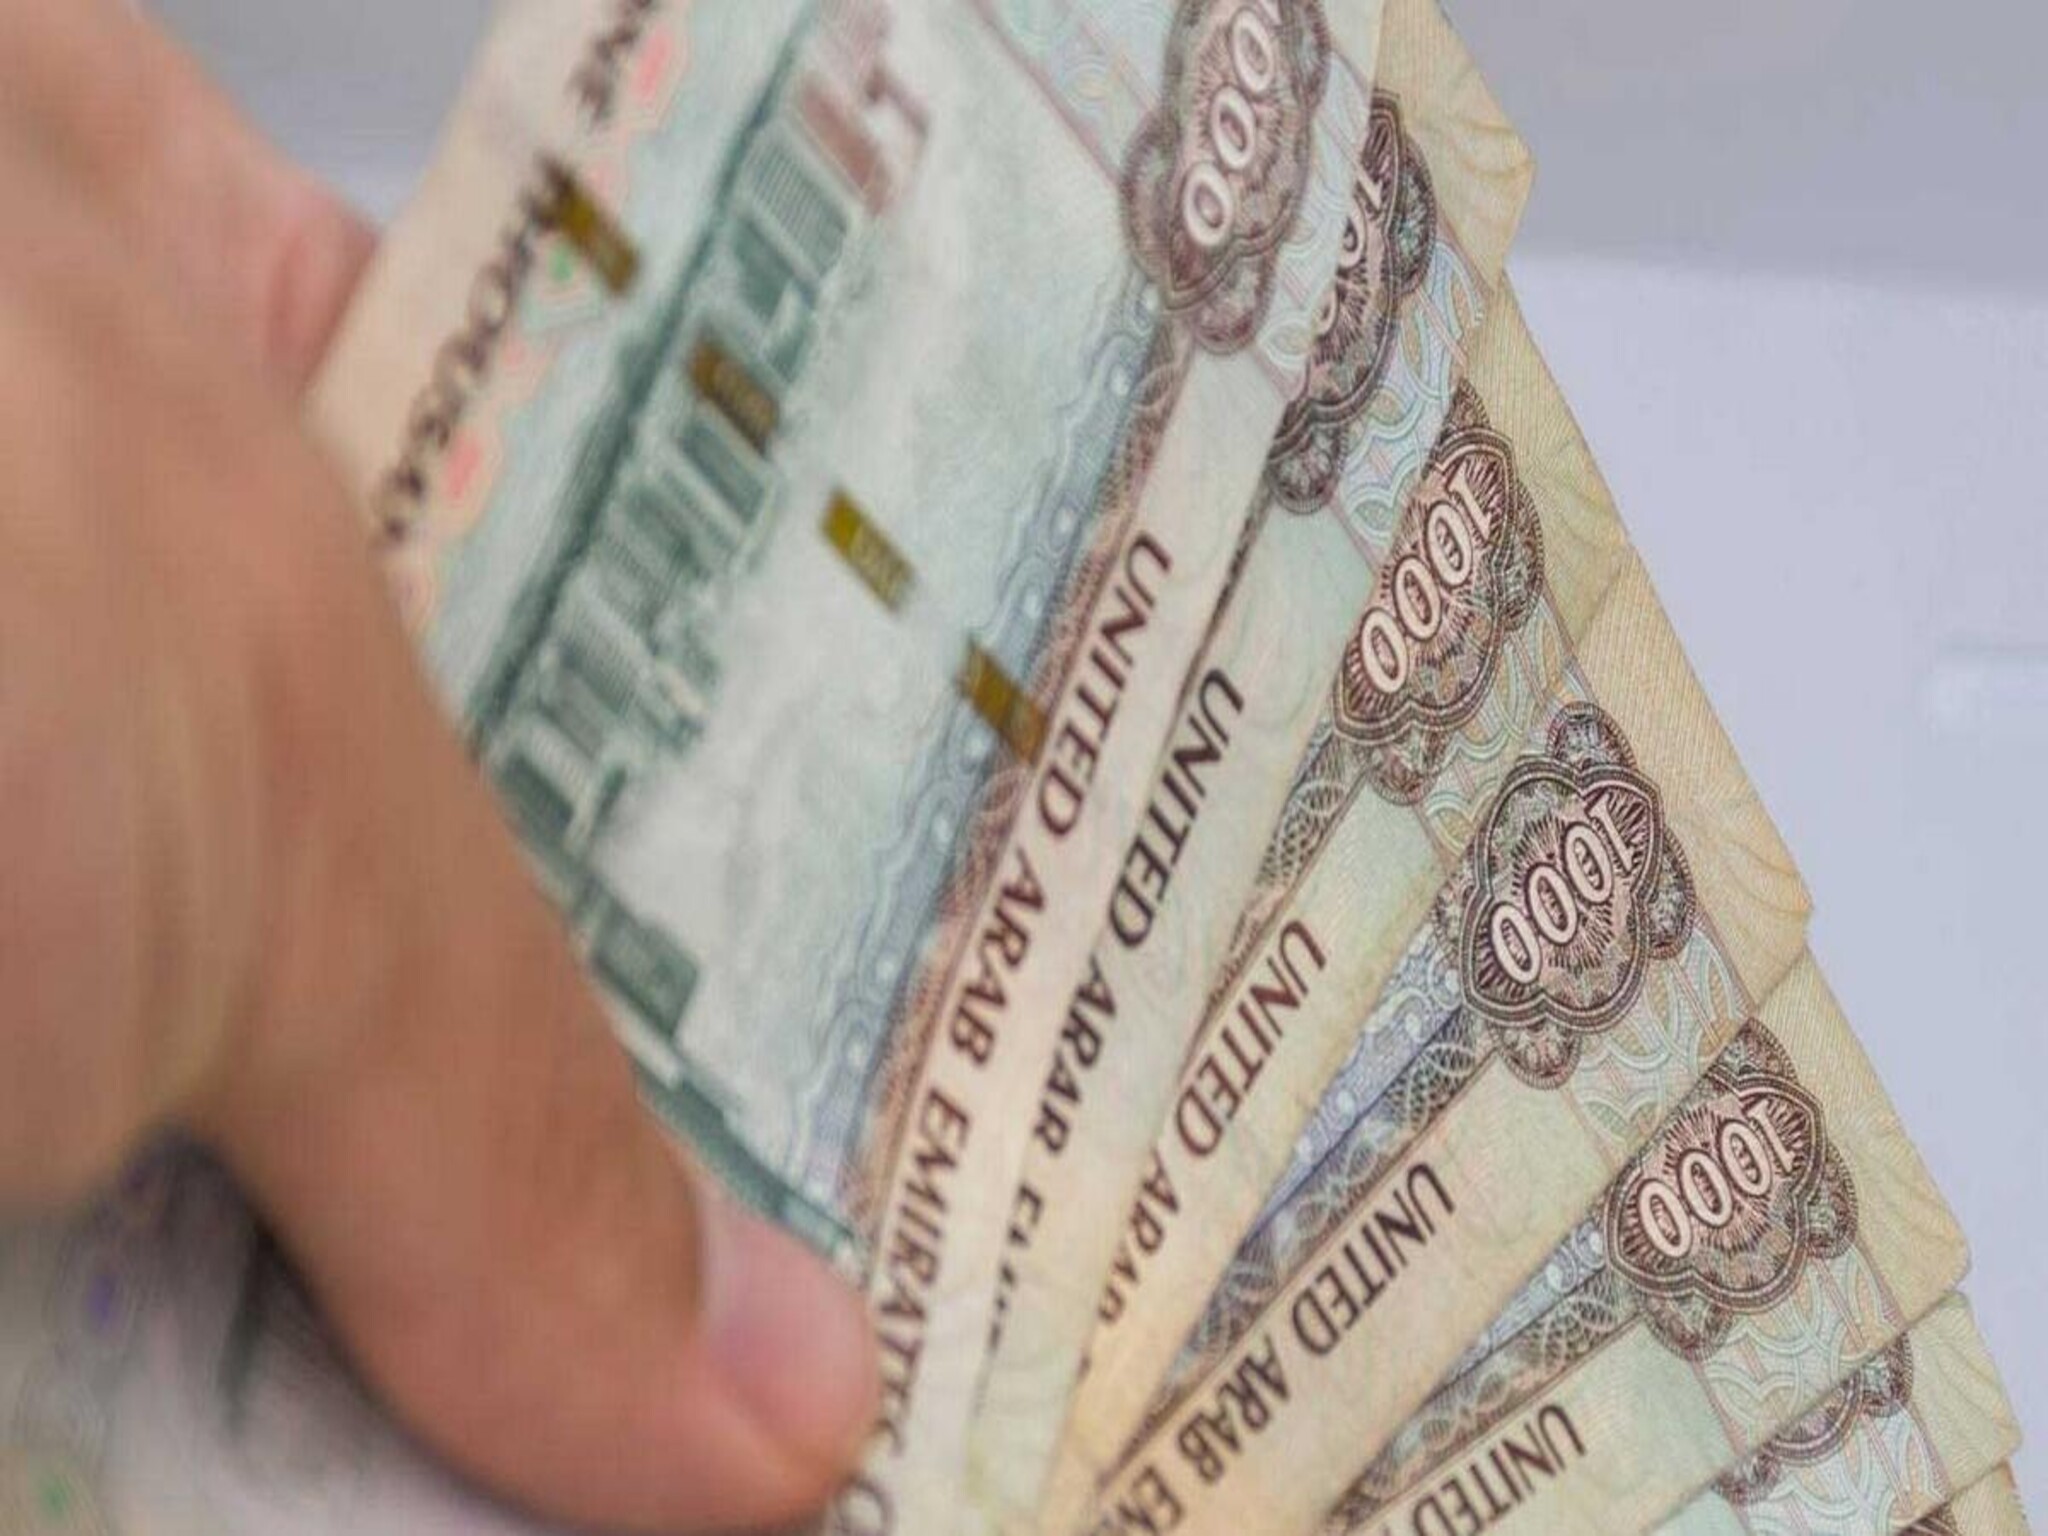 ١٢ مخالفة للعائلات في الإمارات يجب الحذر منها وعقوبتها تصل إلى ٥٠٠ ألف درهم